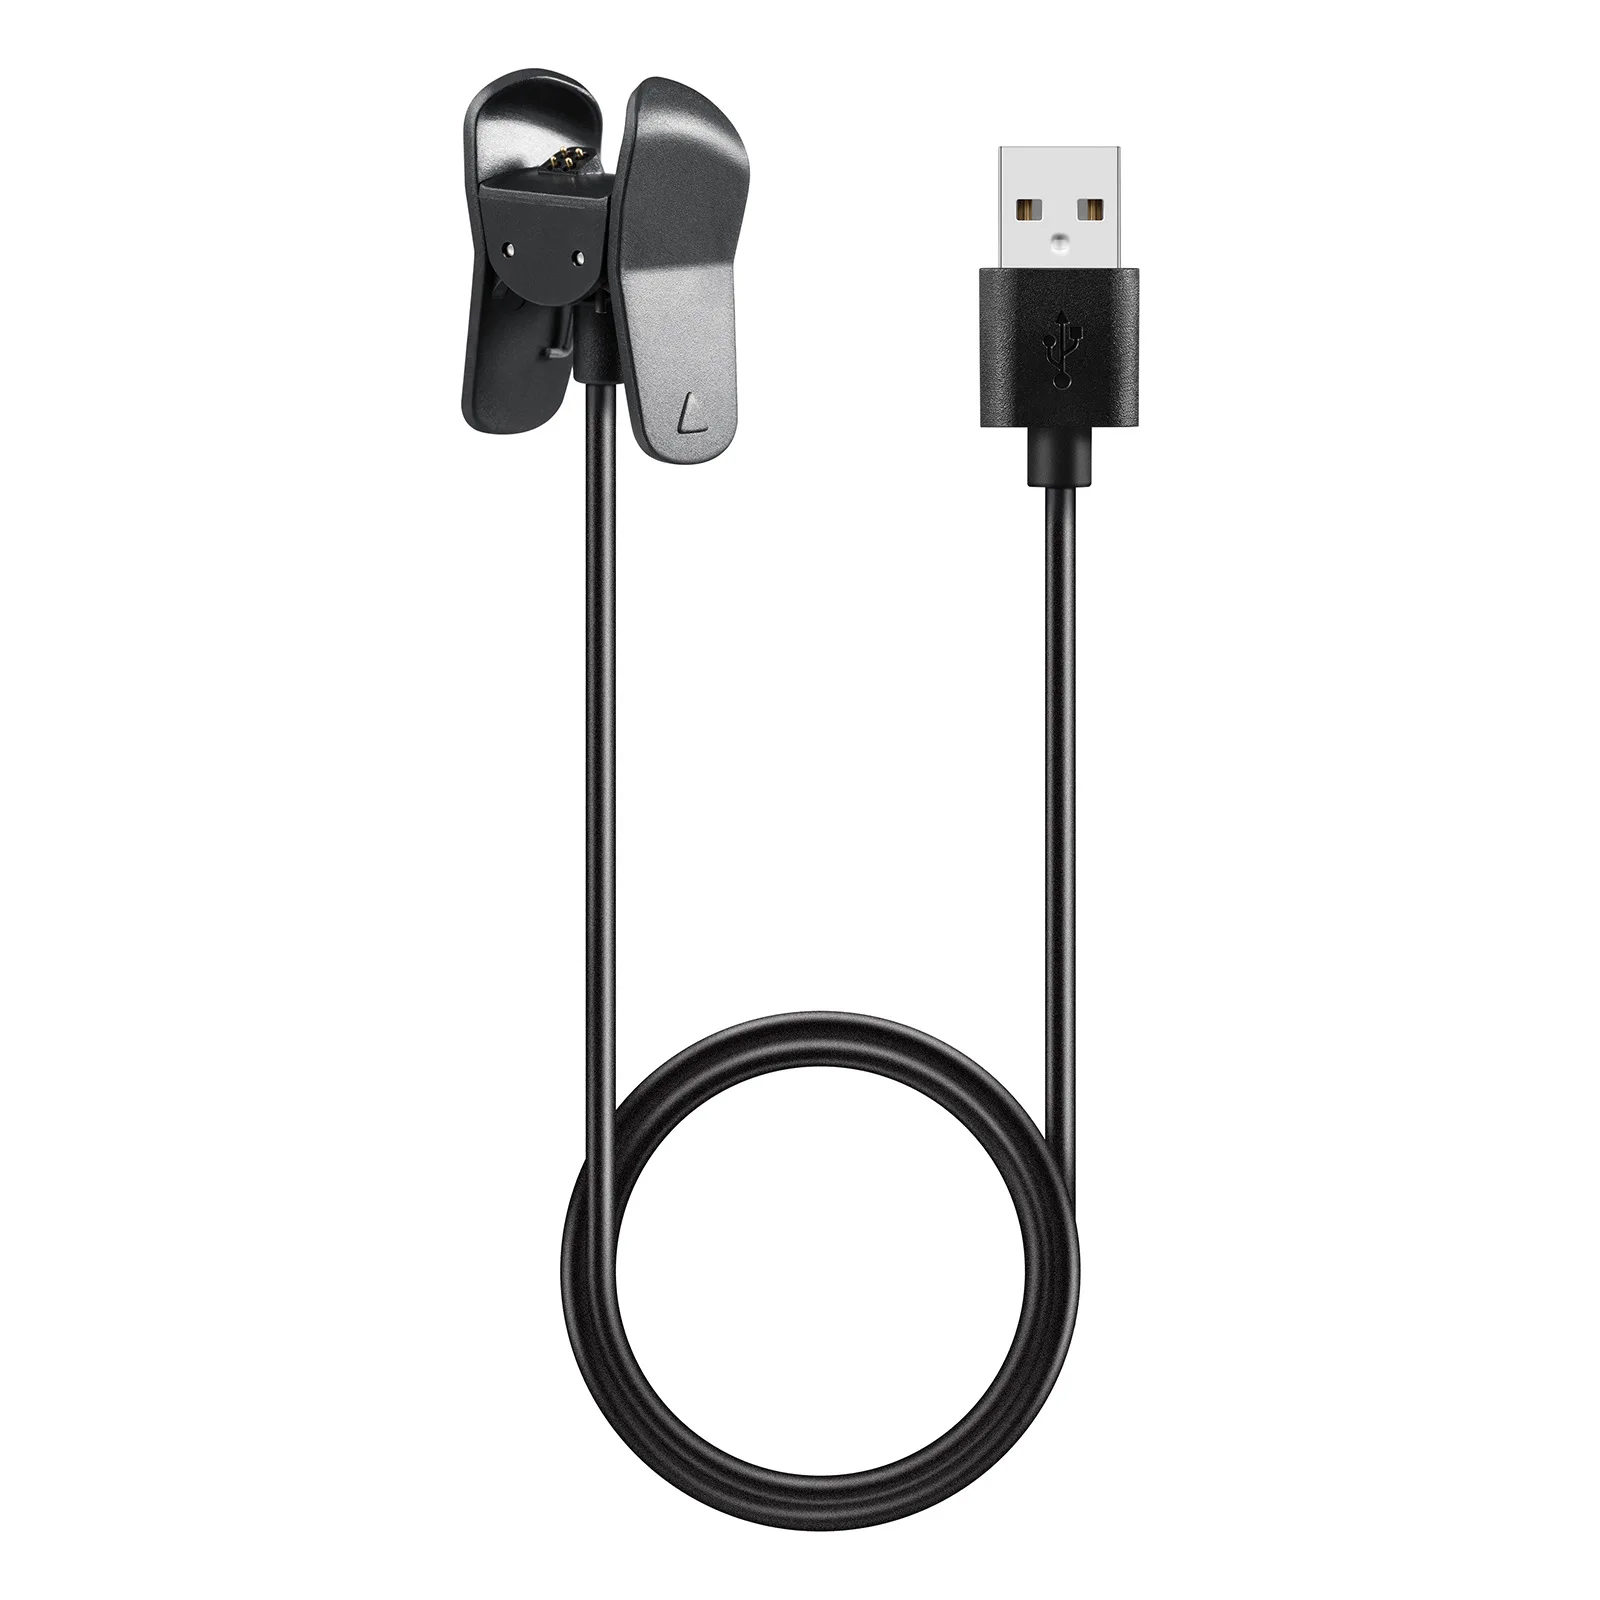 

10 Pcs/Pack,Smart watch Replaceable USB Charger For Garmin vivosmart 3,Usb Charging Cable For Garmin vivosmart 3